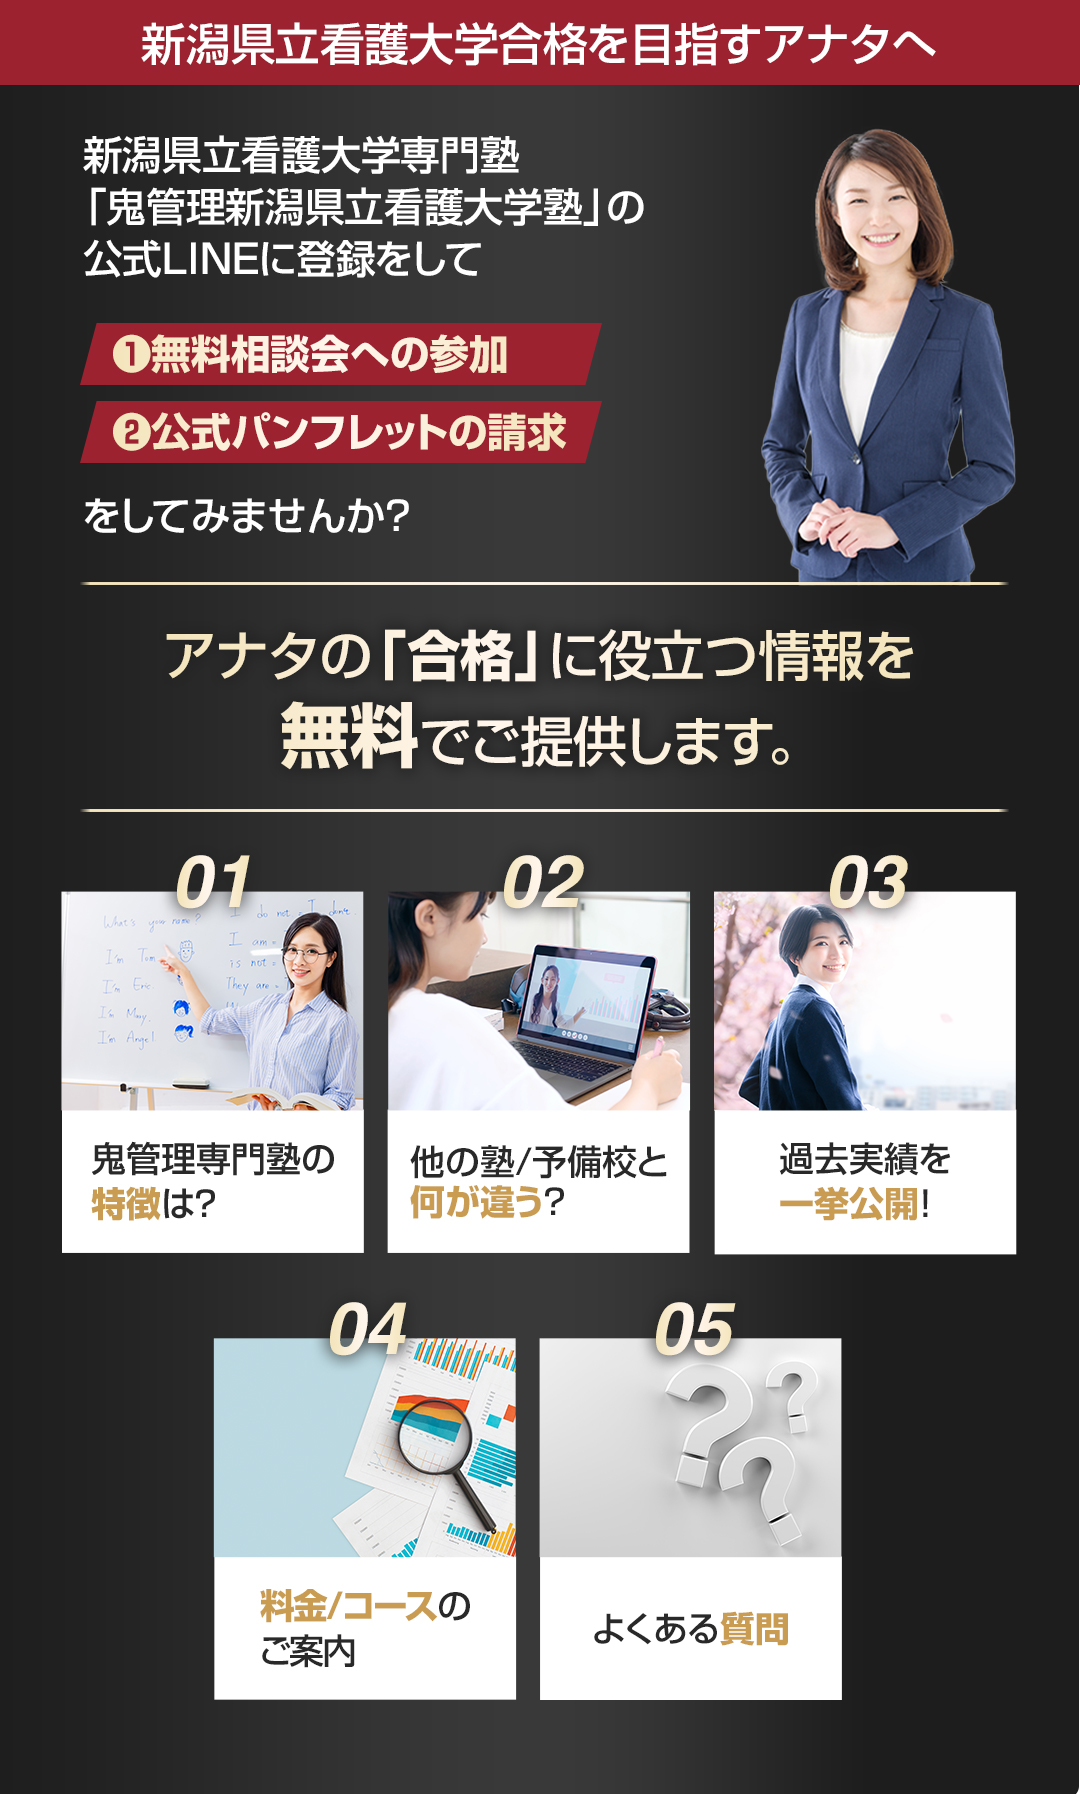 新潟県立看護大学を目指すアナタへ合格に役立つ情報を無料でご提供します